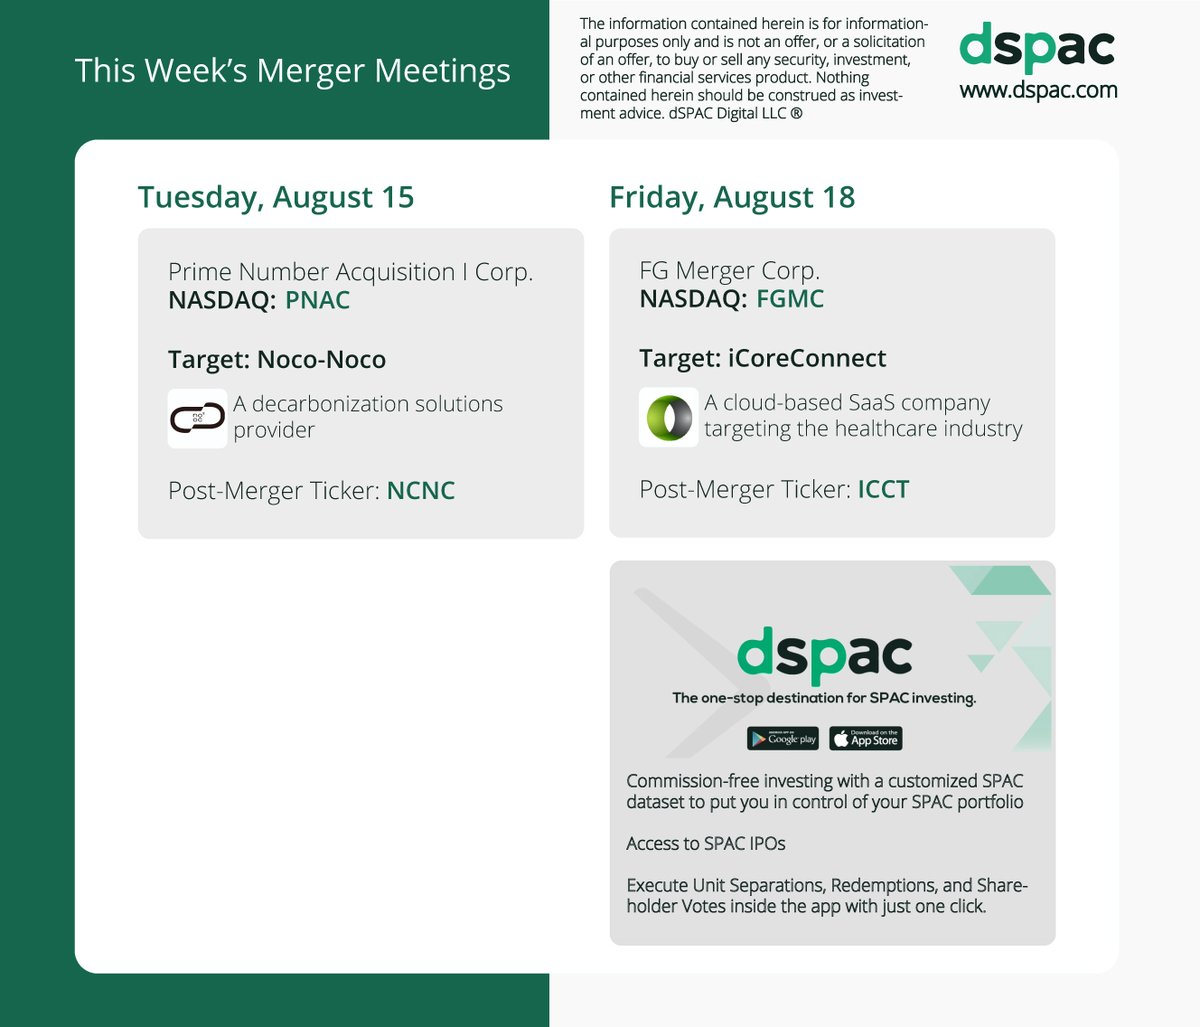 This week’s #SPAC merger votes:
$PNAC $FGMC